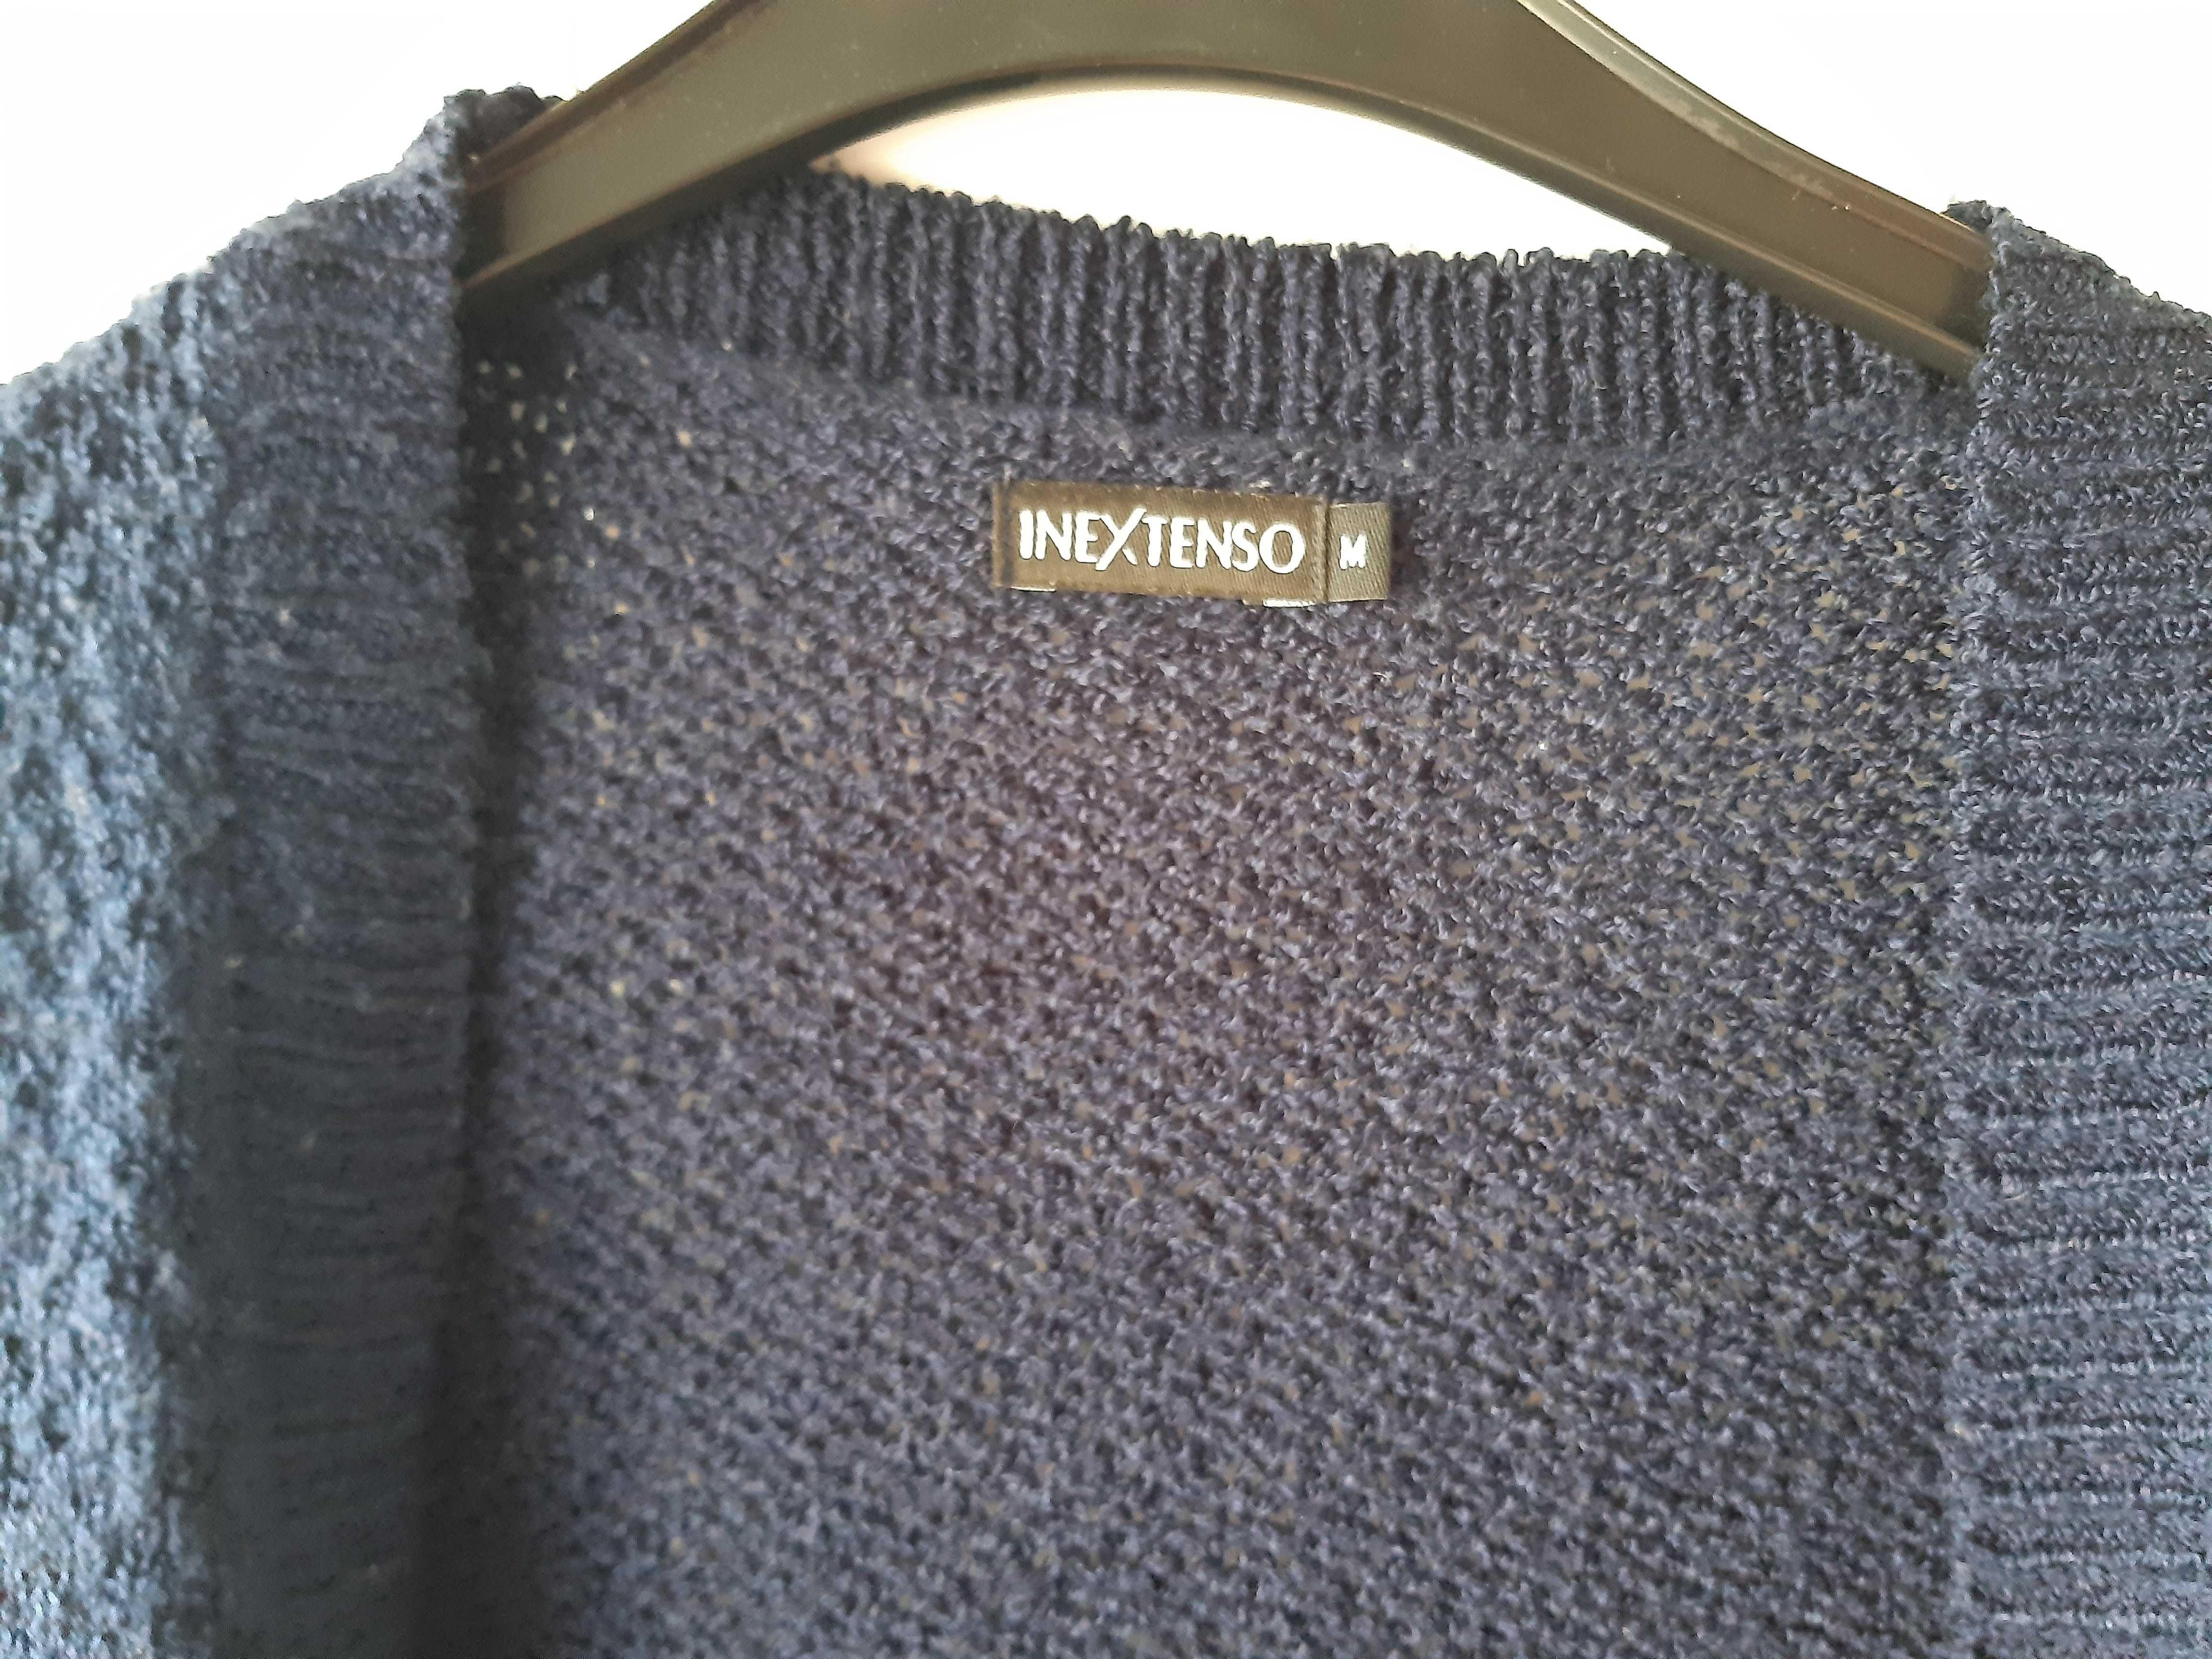 Kardigan sweter narzutka granatowy nietoperz długi (M)